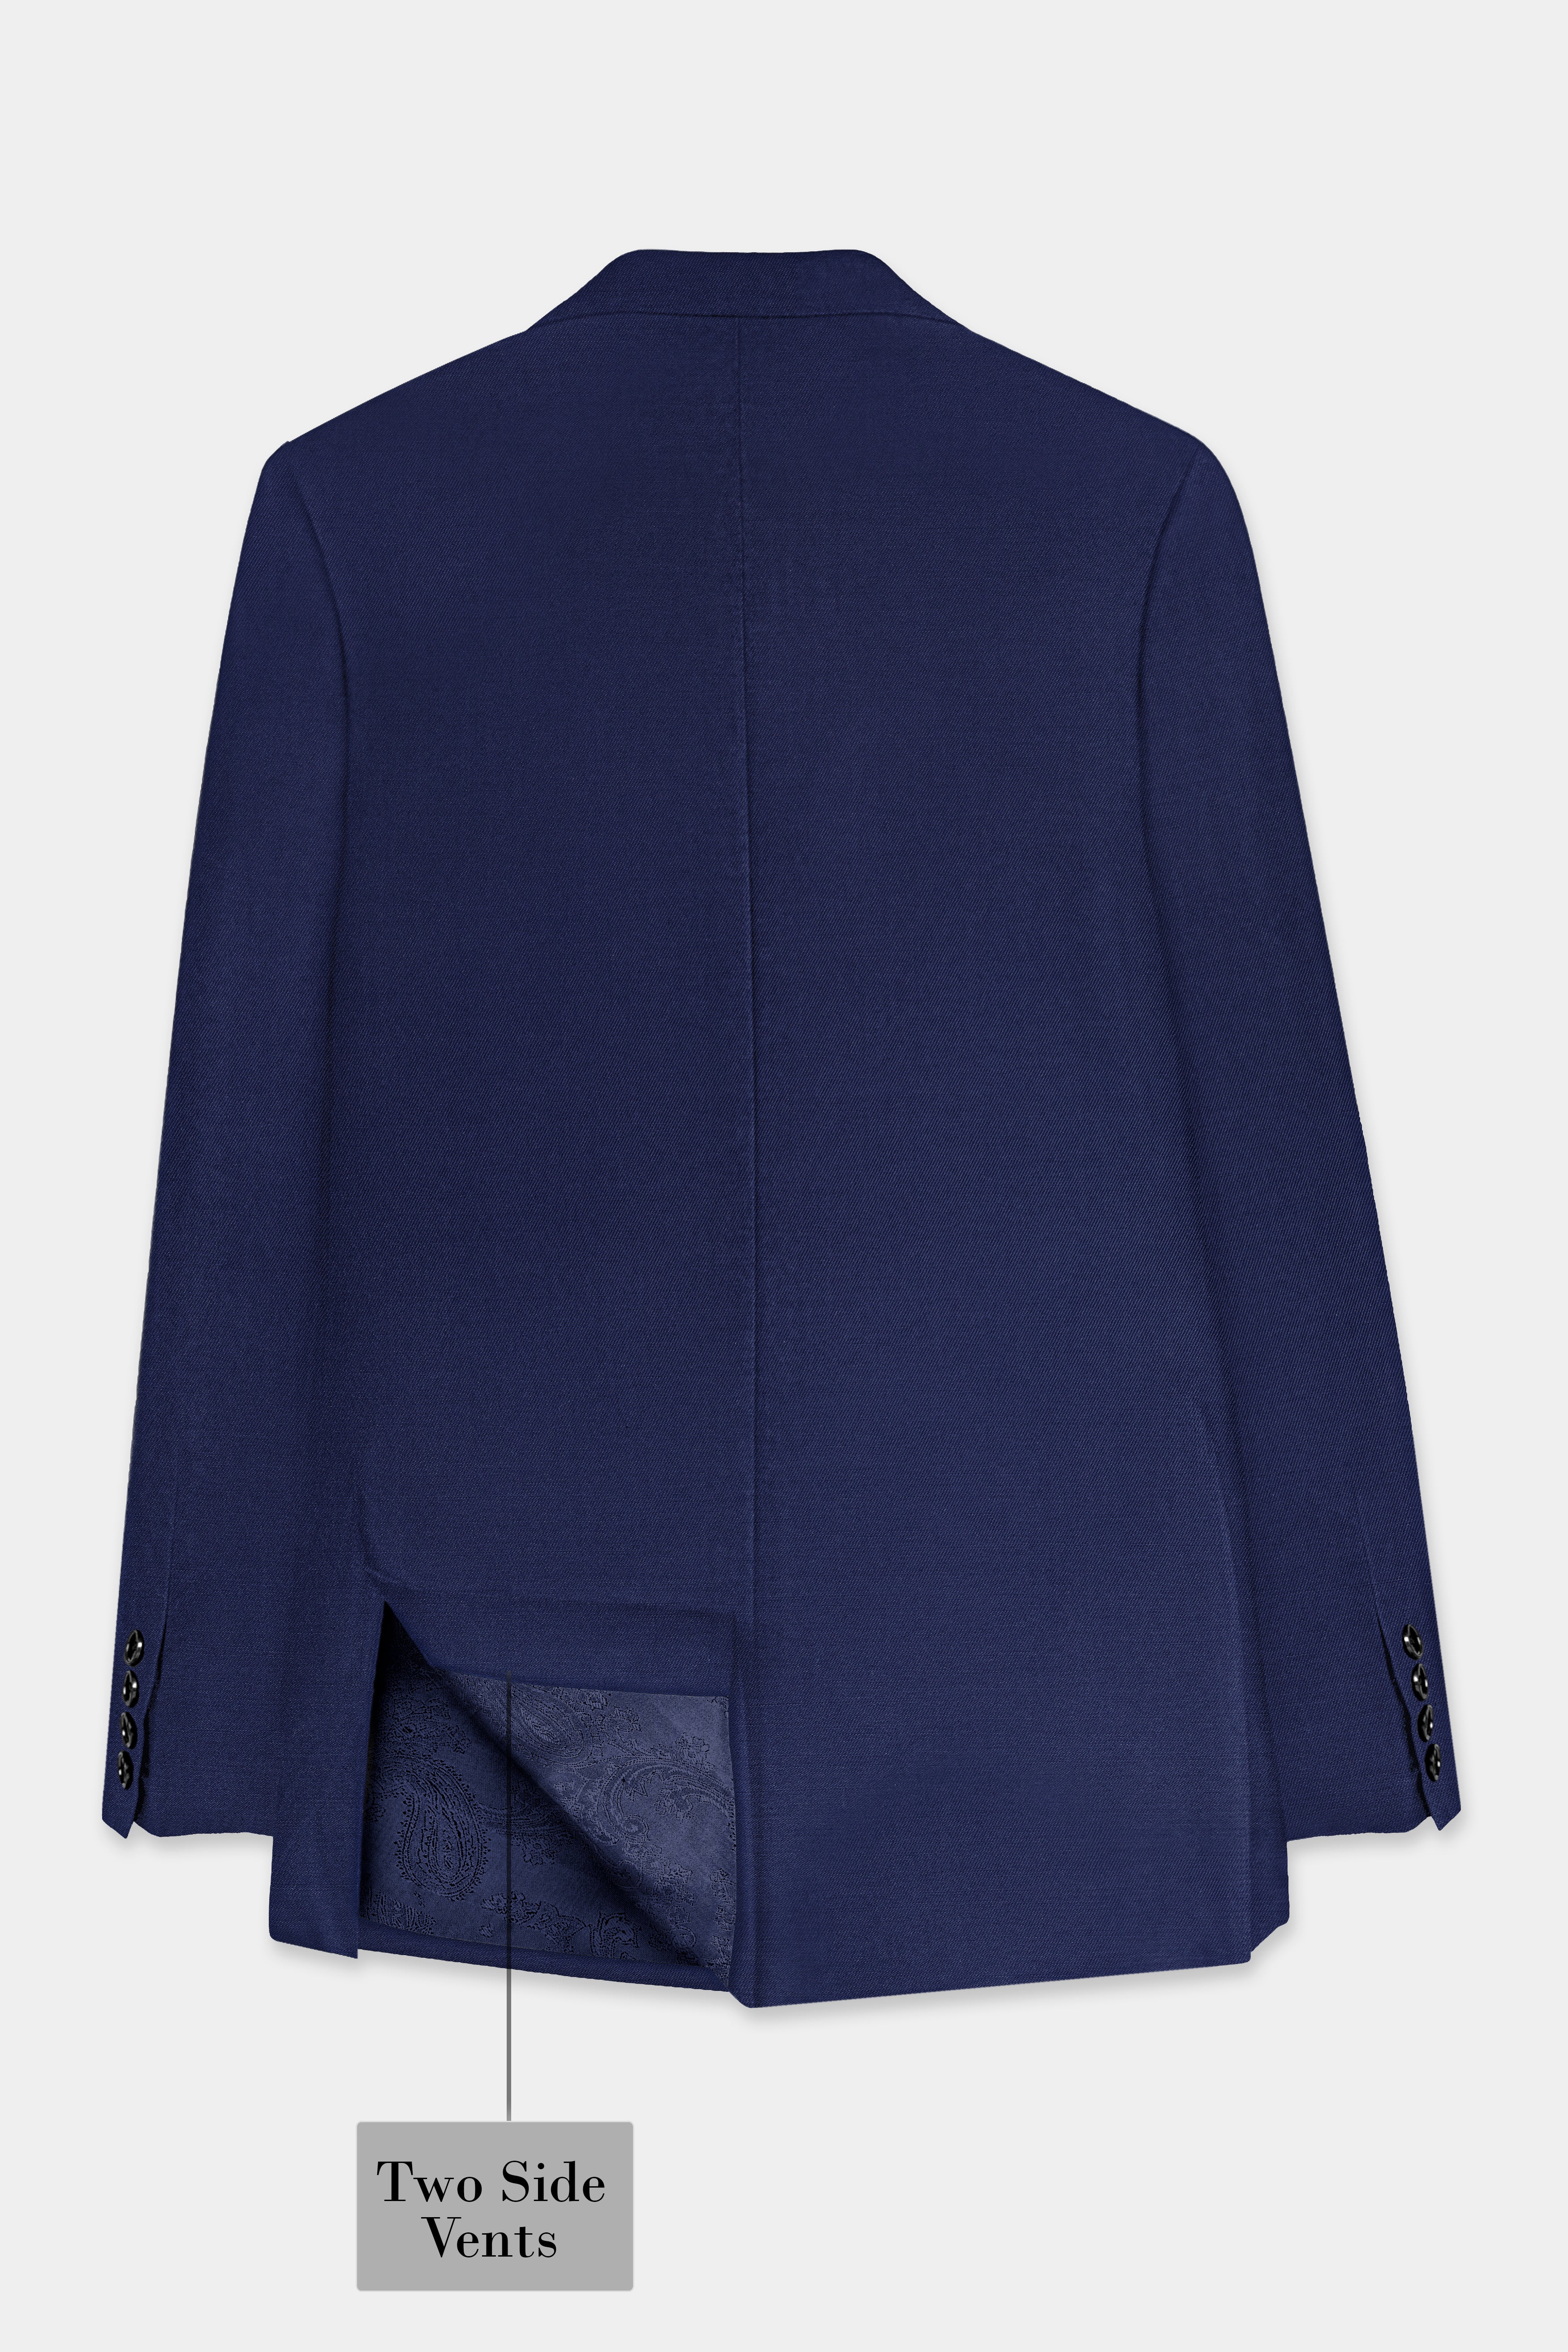 Tealish Blue Plain Solid Wool Blend Suit